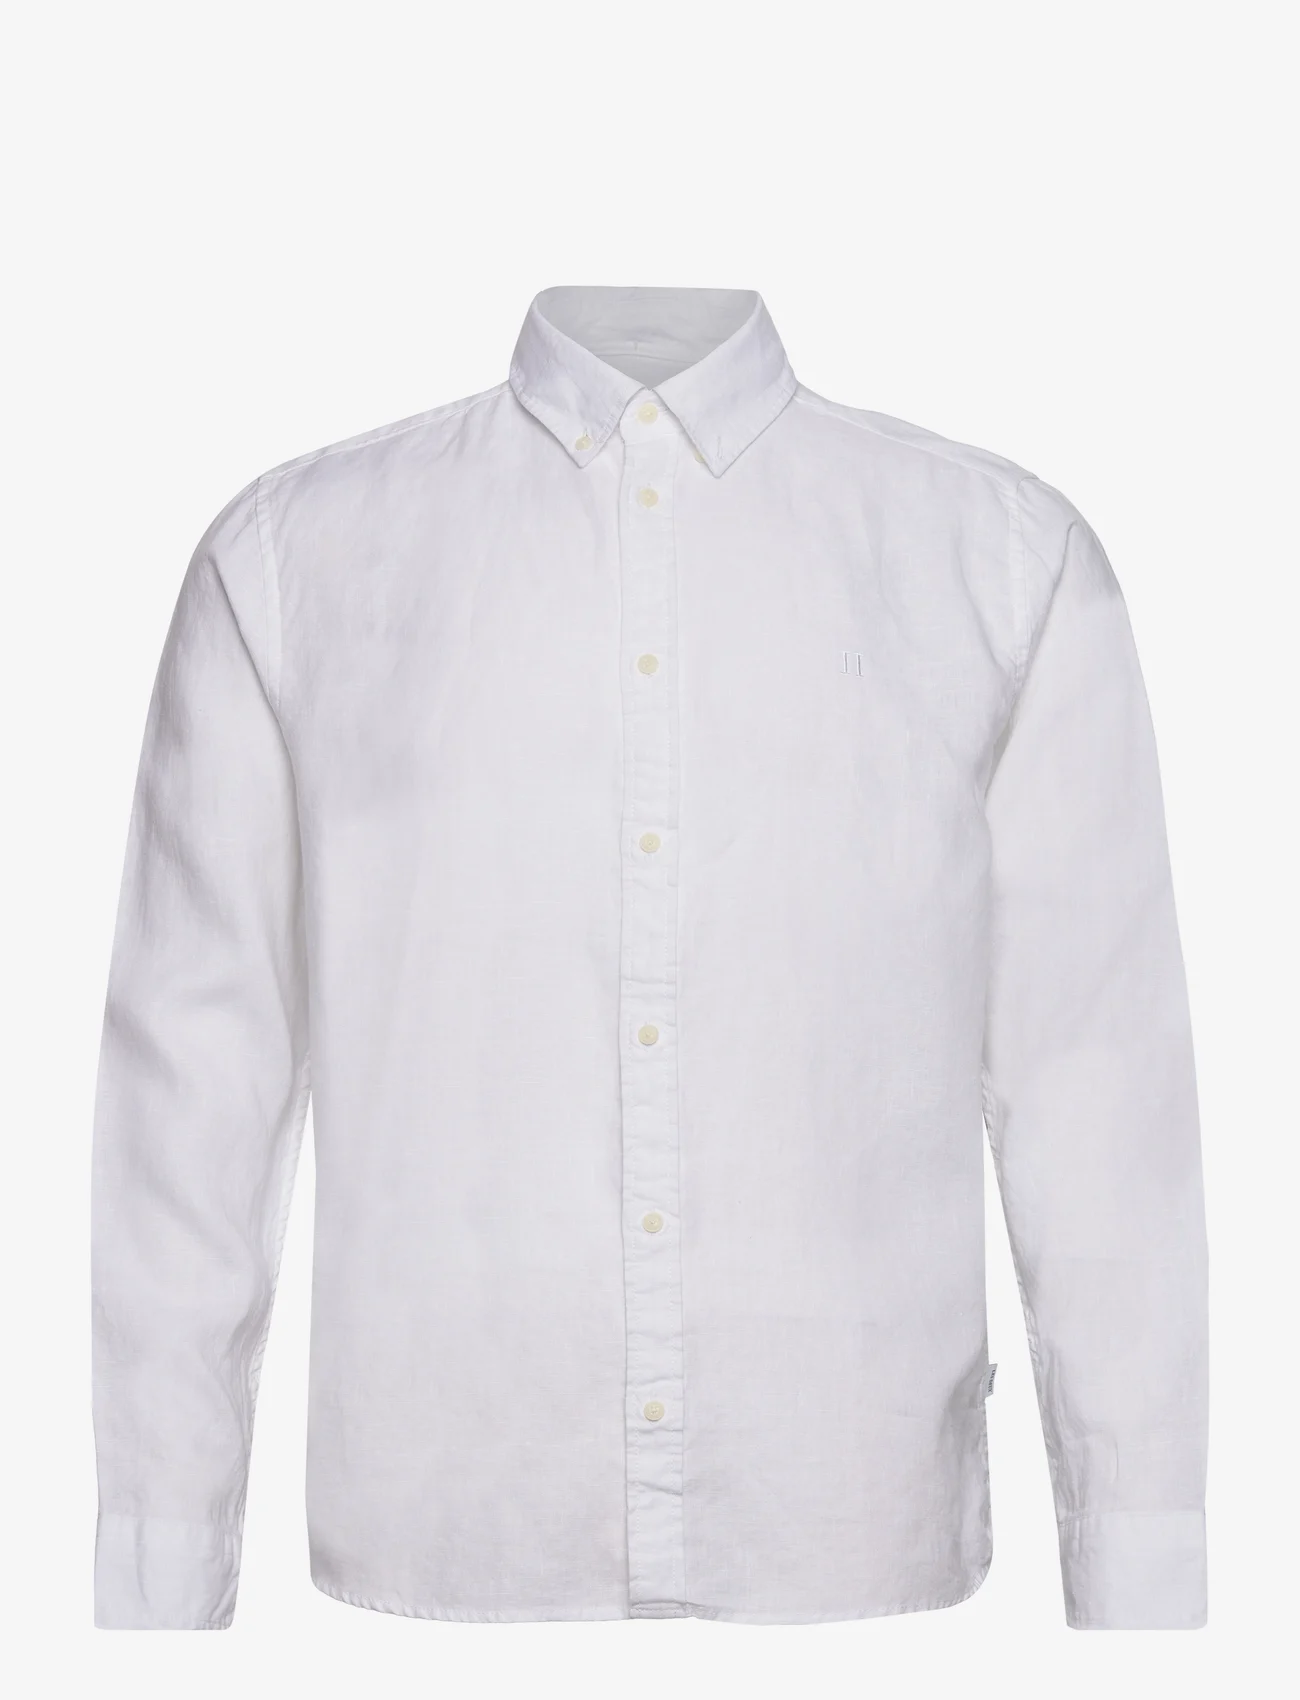 Les Deux - Kristian Linen B.D. Shirt - linskjorter - white - 0